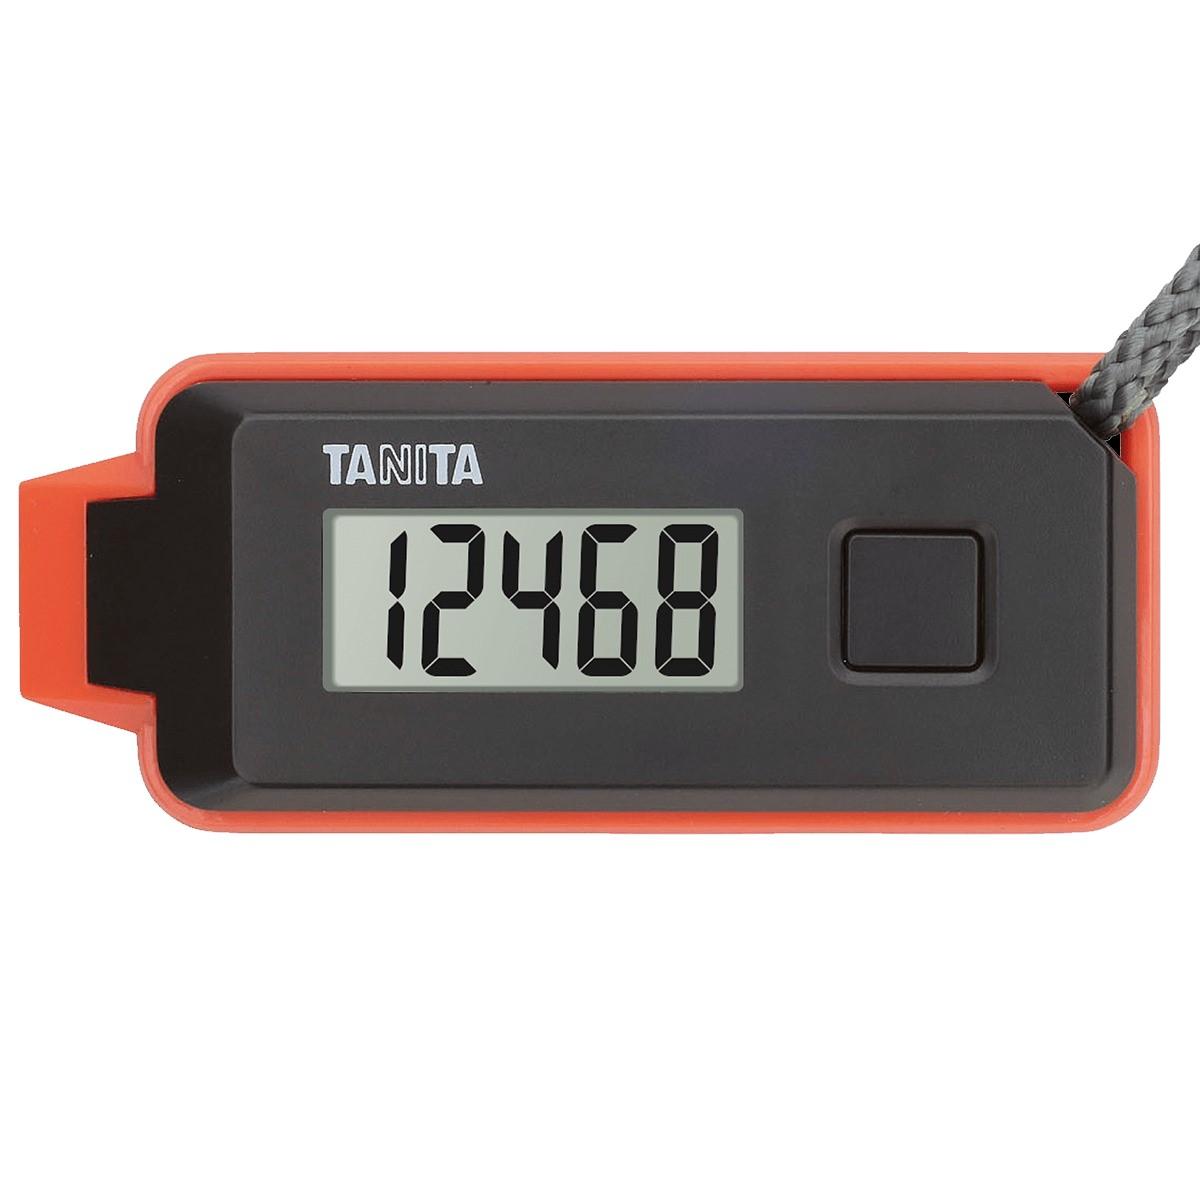 【送料無料】TANITA タニタ 緊急ホイッスル付き3Dセンサー搭載歩数計「歩イッスル」 FB-739 ブラック